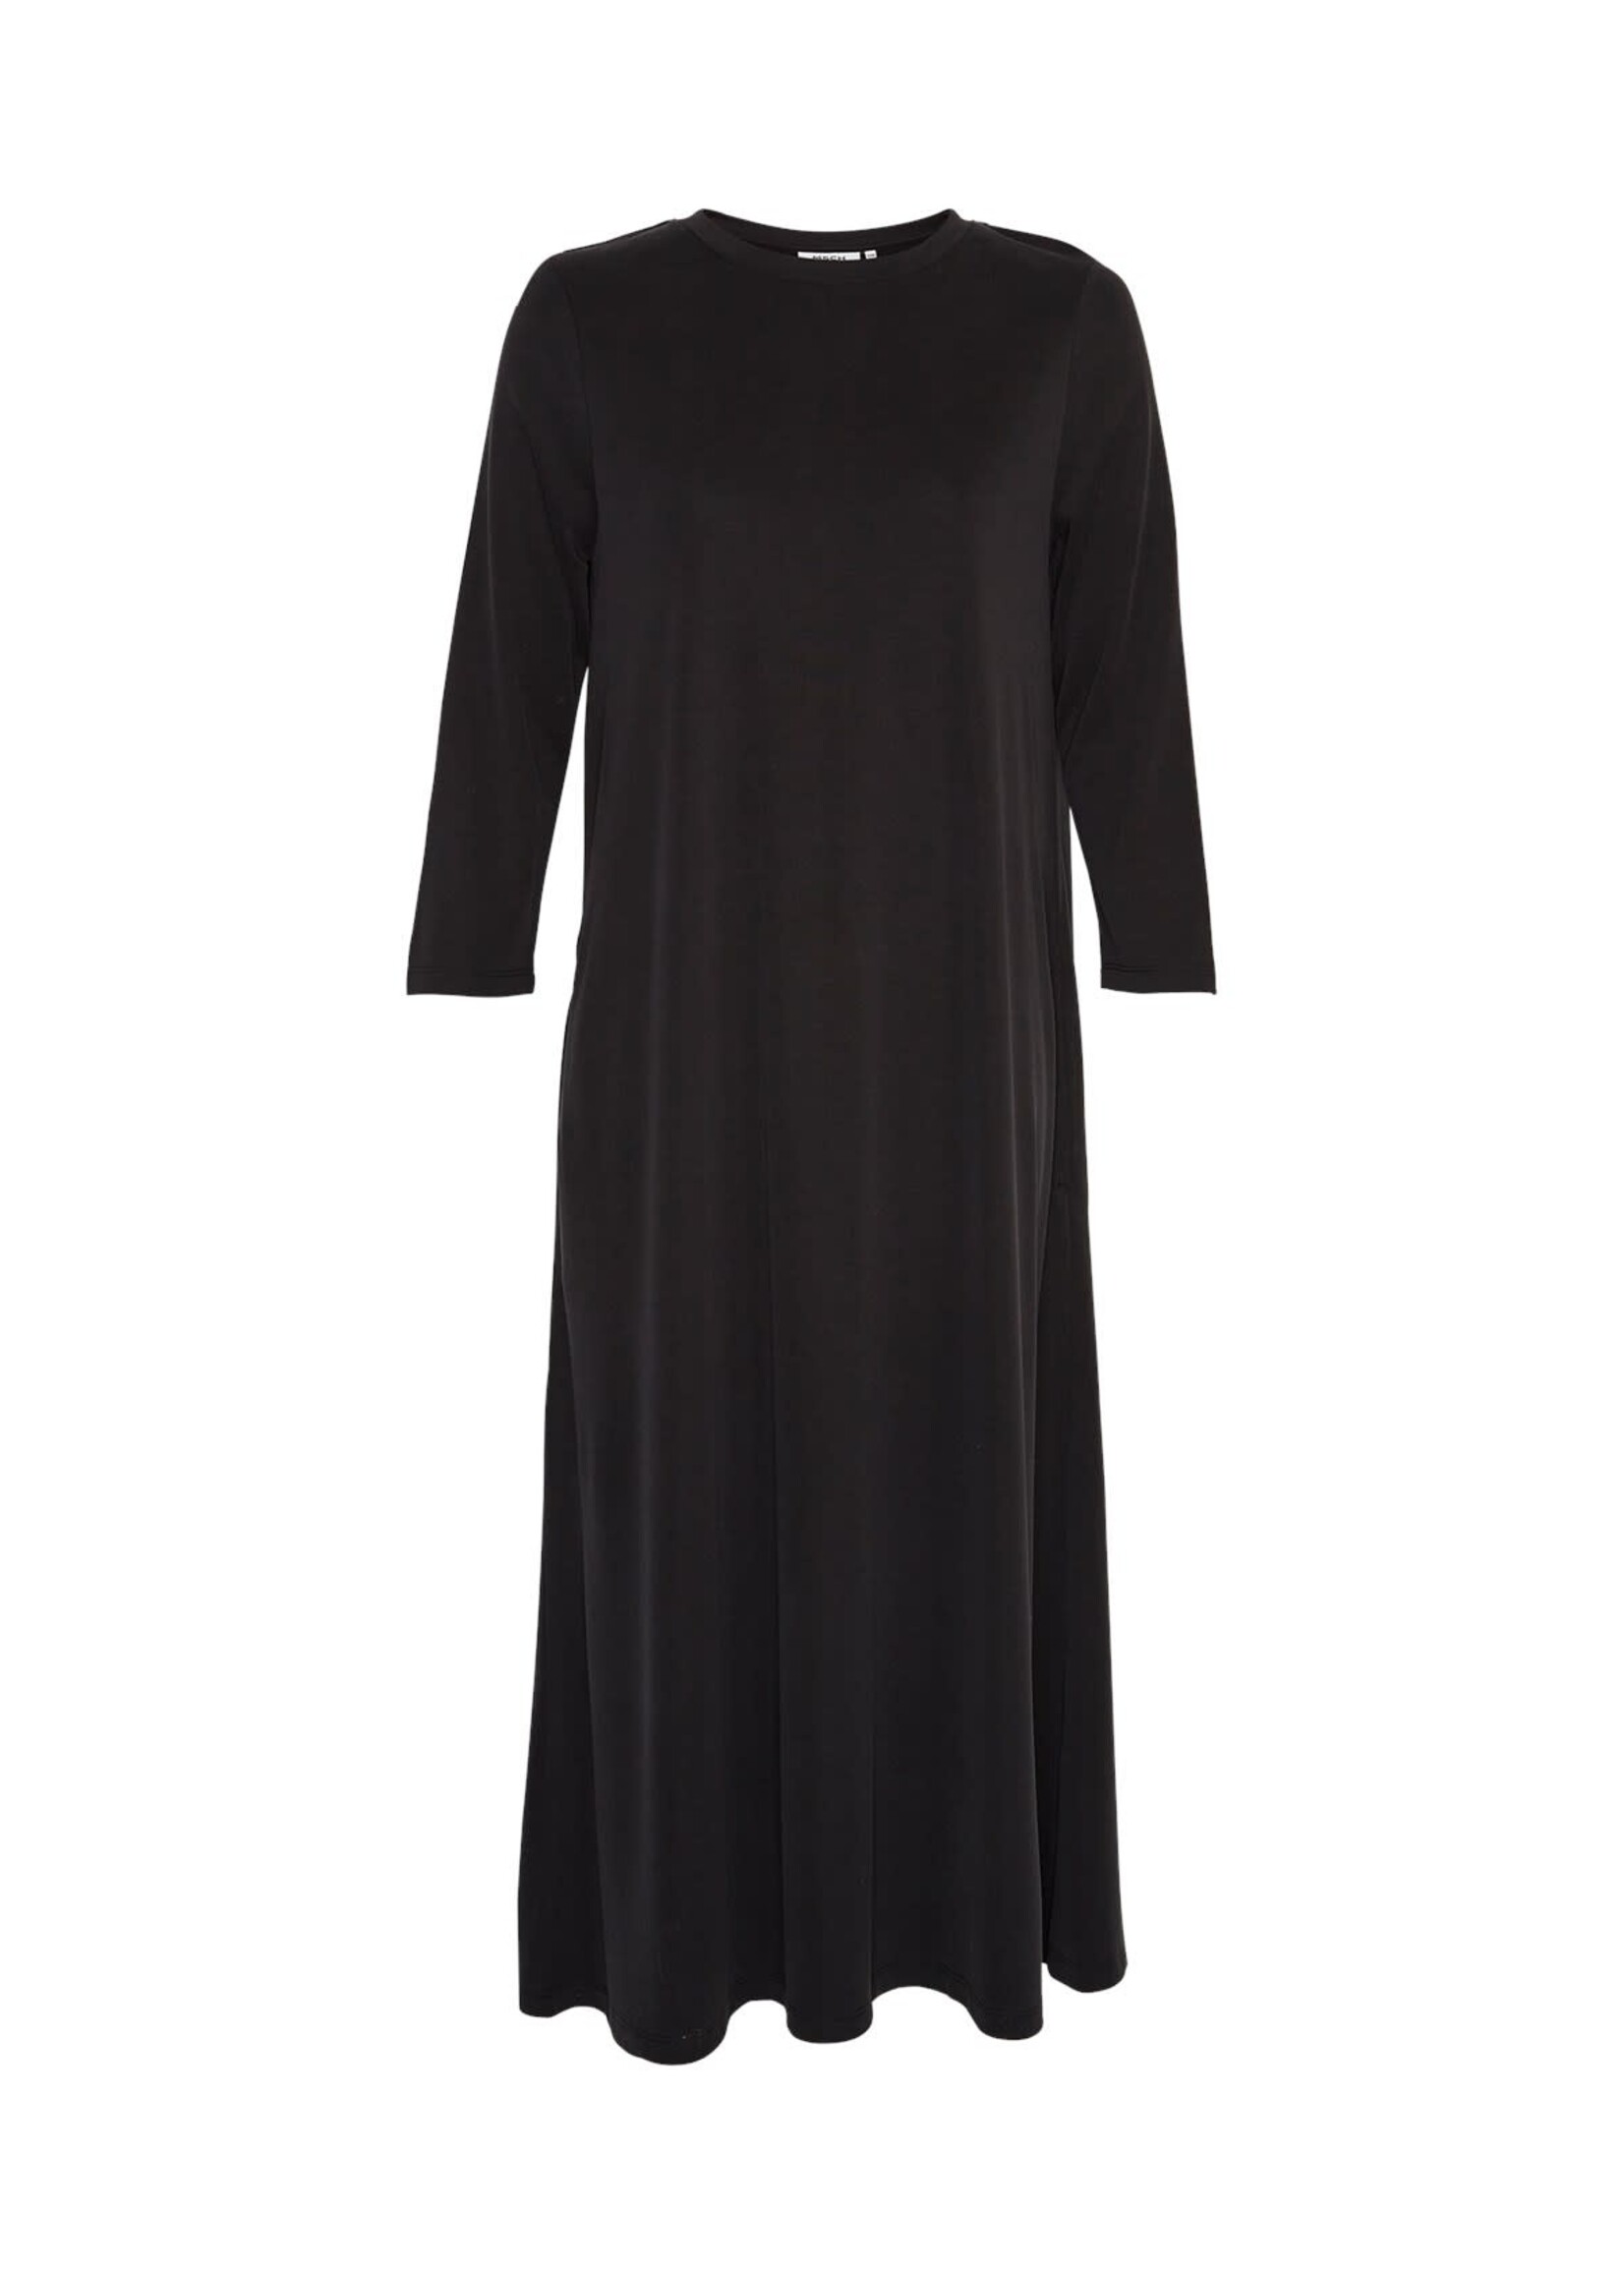 Moss Copenhagen MSCHBirdia Lynette 3/4 Dress, Black, Size: